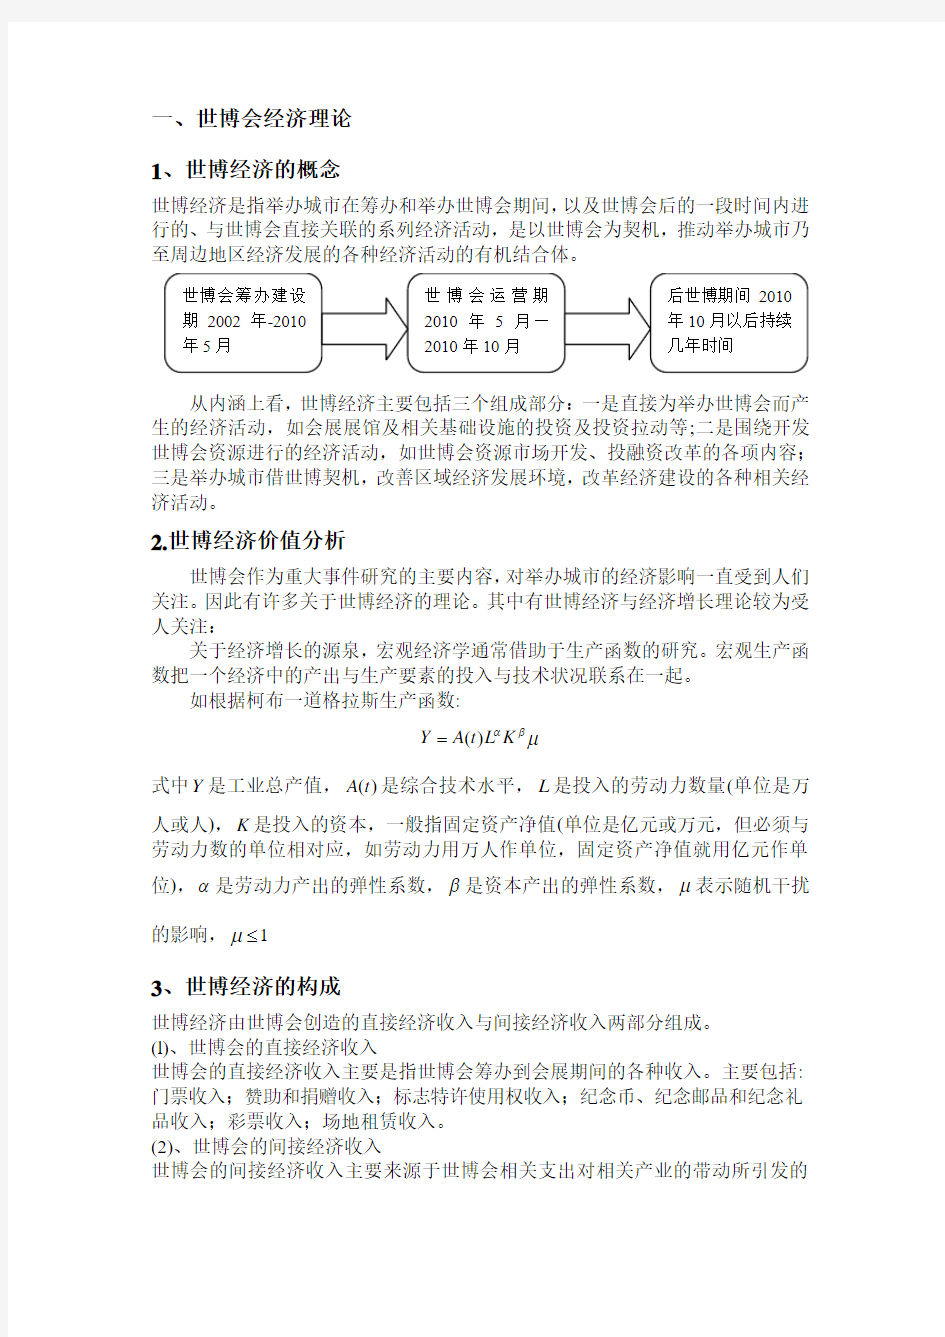 2010年上海世博会的投入情况分析(推荐文档)